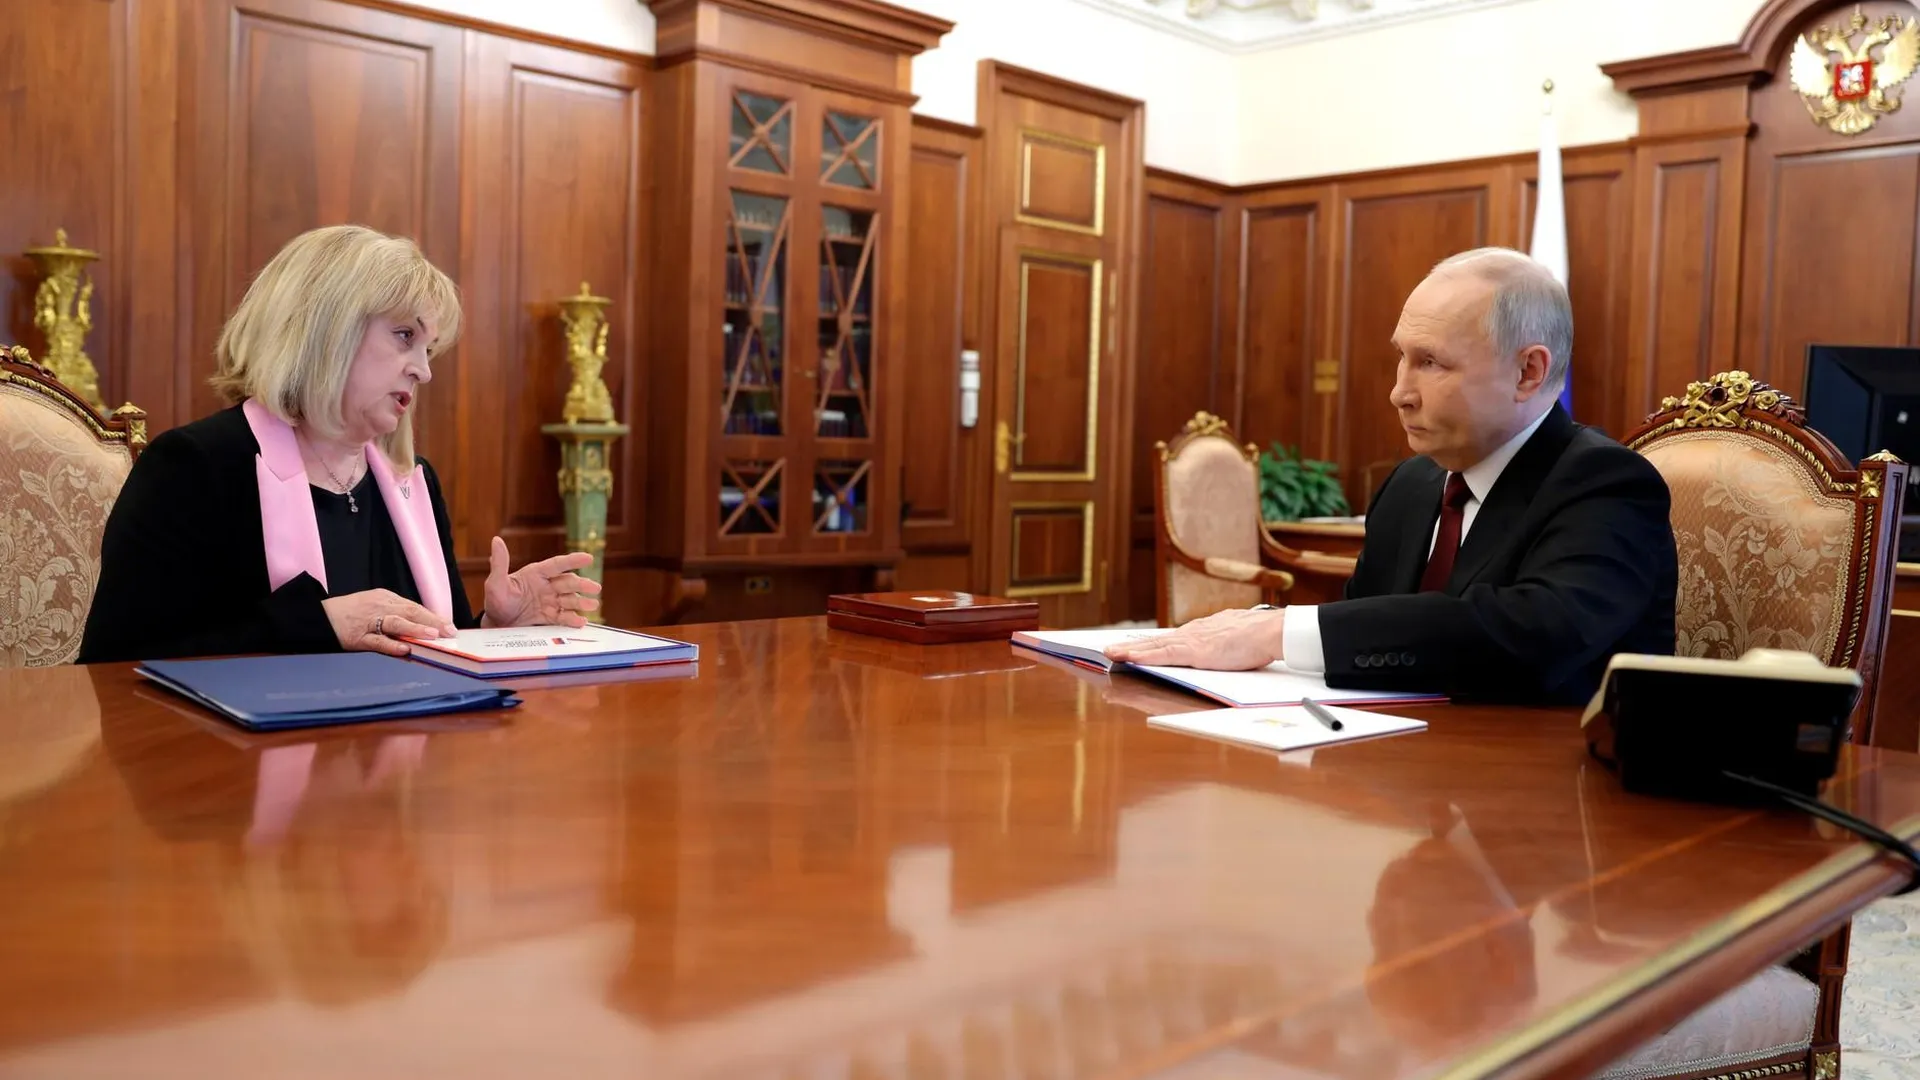 Памфилова на встрече с Путиным назвала итоги президентских выборов удивительными